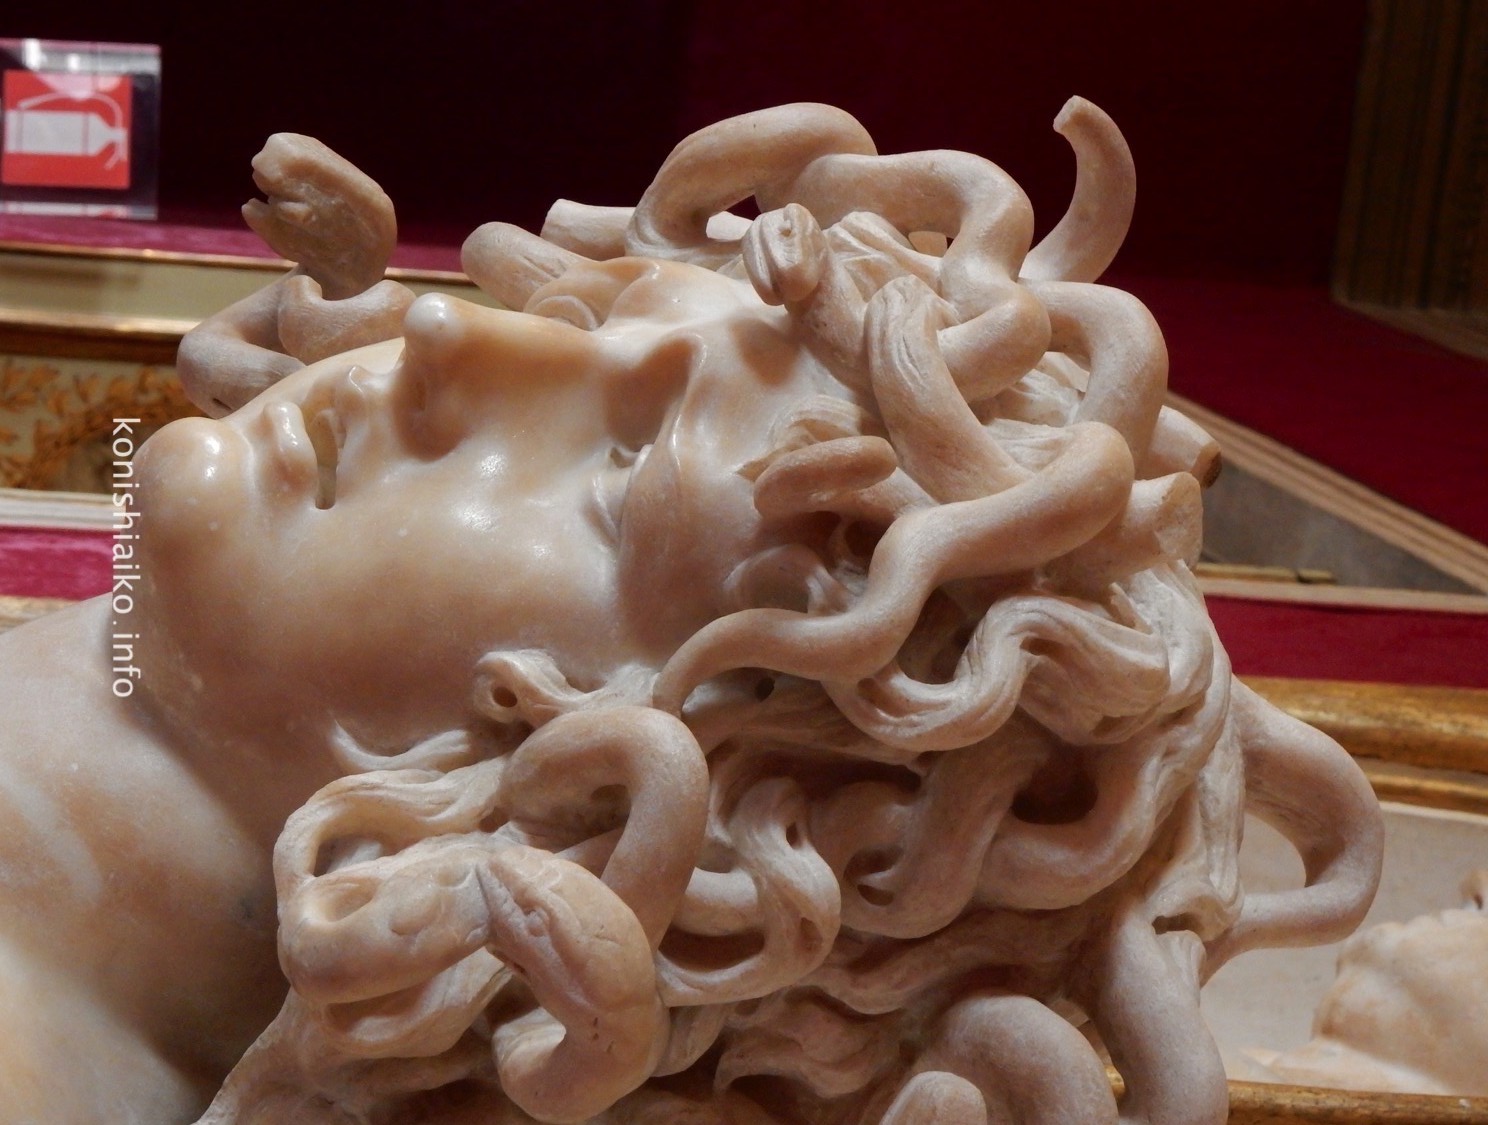 Bernini's Medusa